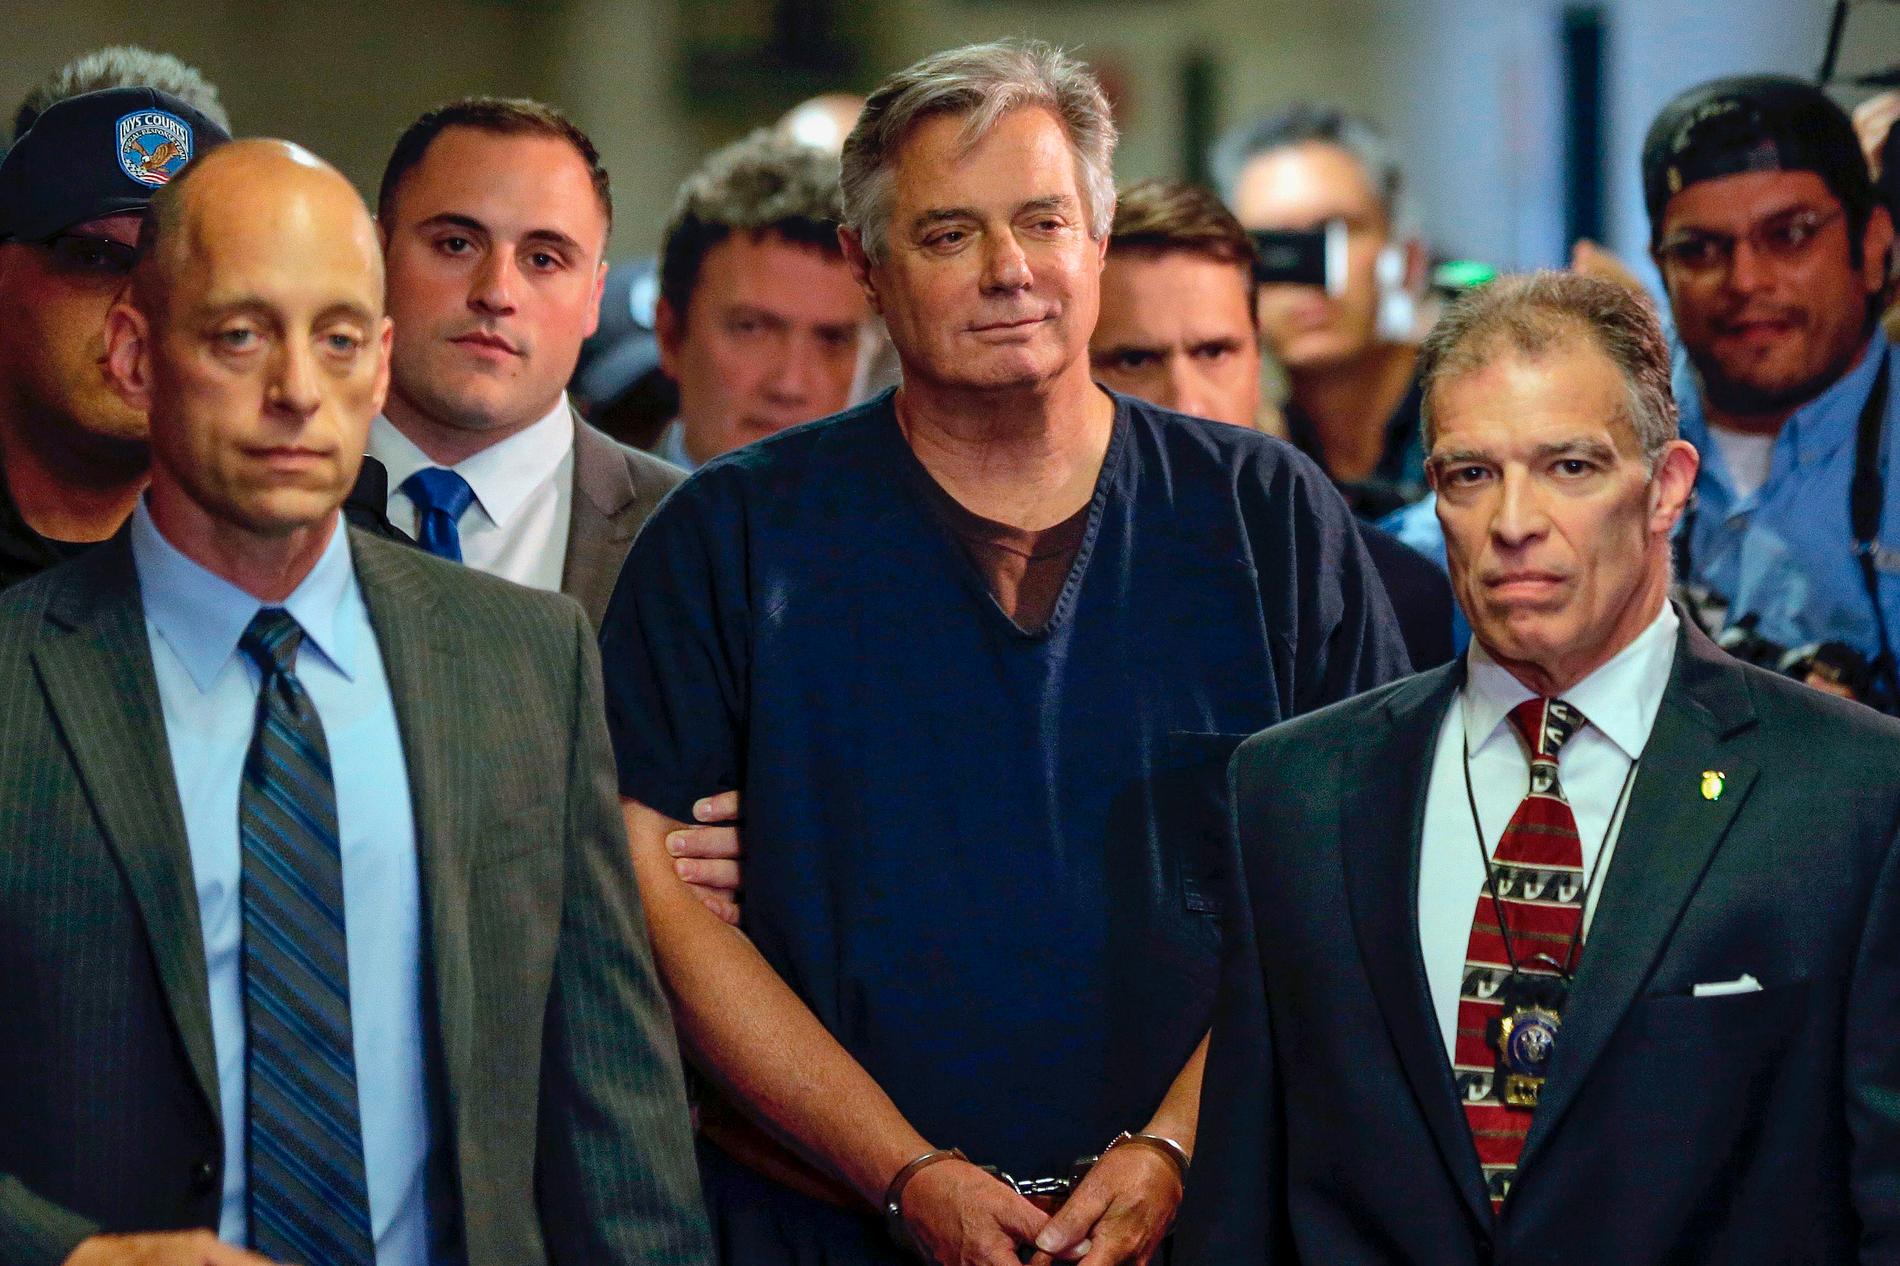 Paul Manafort anländer till rätten i New York, i juni 2019.